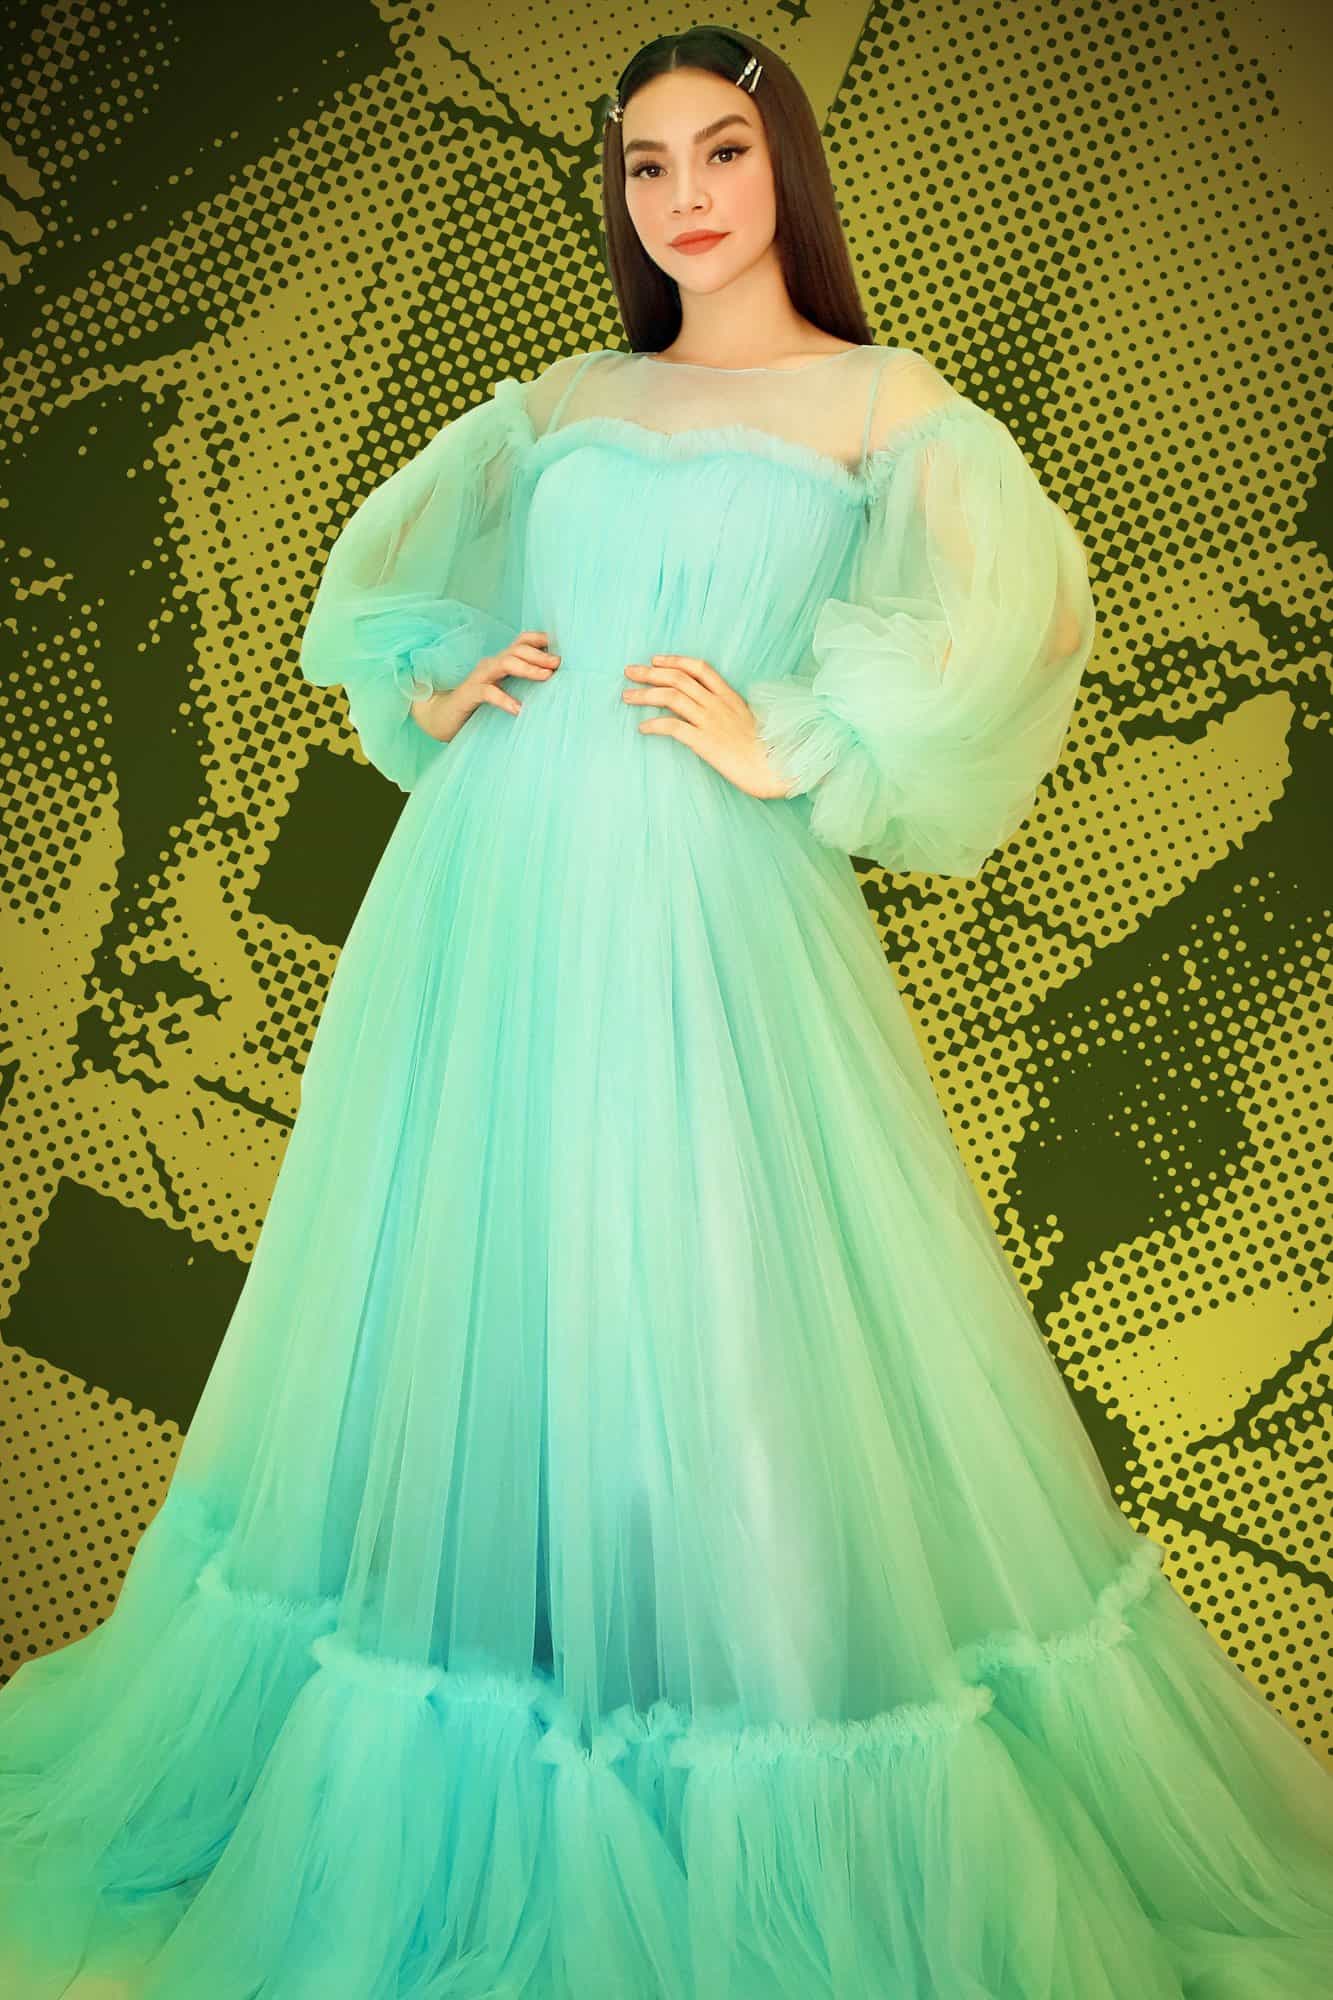 Trở thành công chúa với những mẫu váy của NTK Nguyễn Minh Công - Báo Phụ Nữ